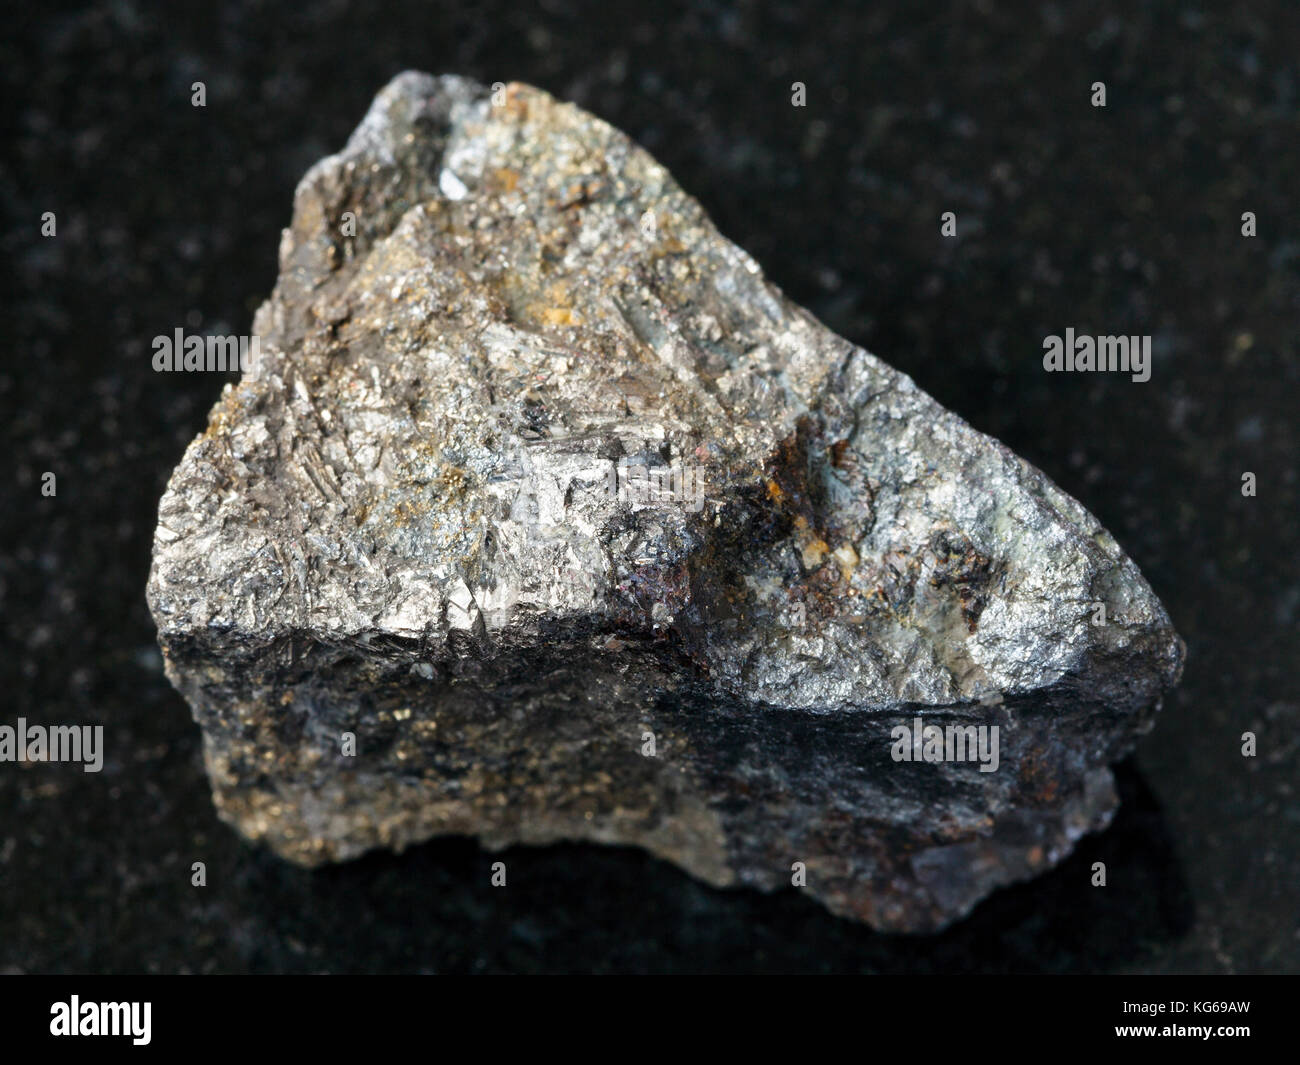 Makroaufnahmen von natürlichen Mineralgestein Muster - Grobe arsenopyrit Stein auf dunklem Granit Hintergrund aus zabaykalsky Krasnodar, Russland Stockfoto